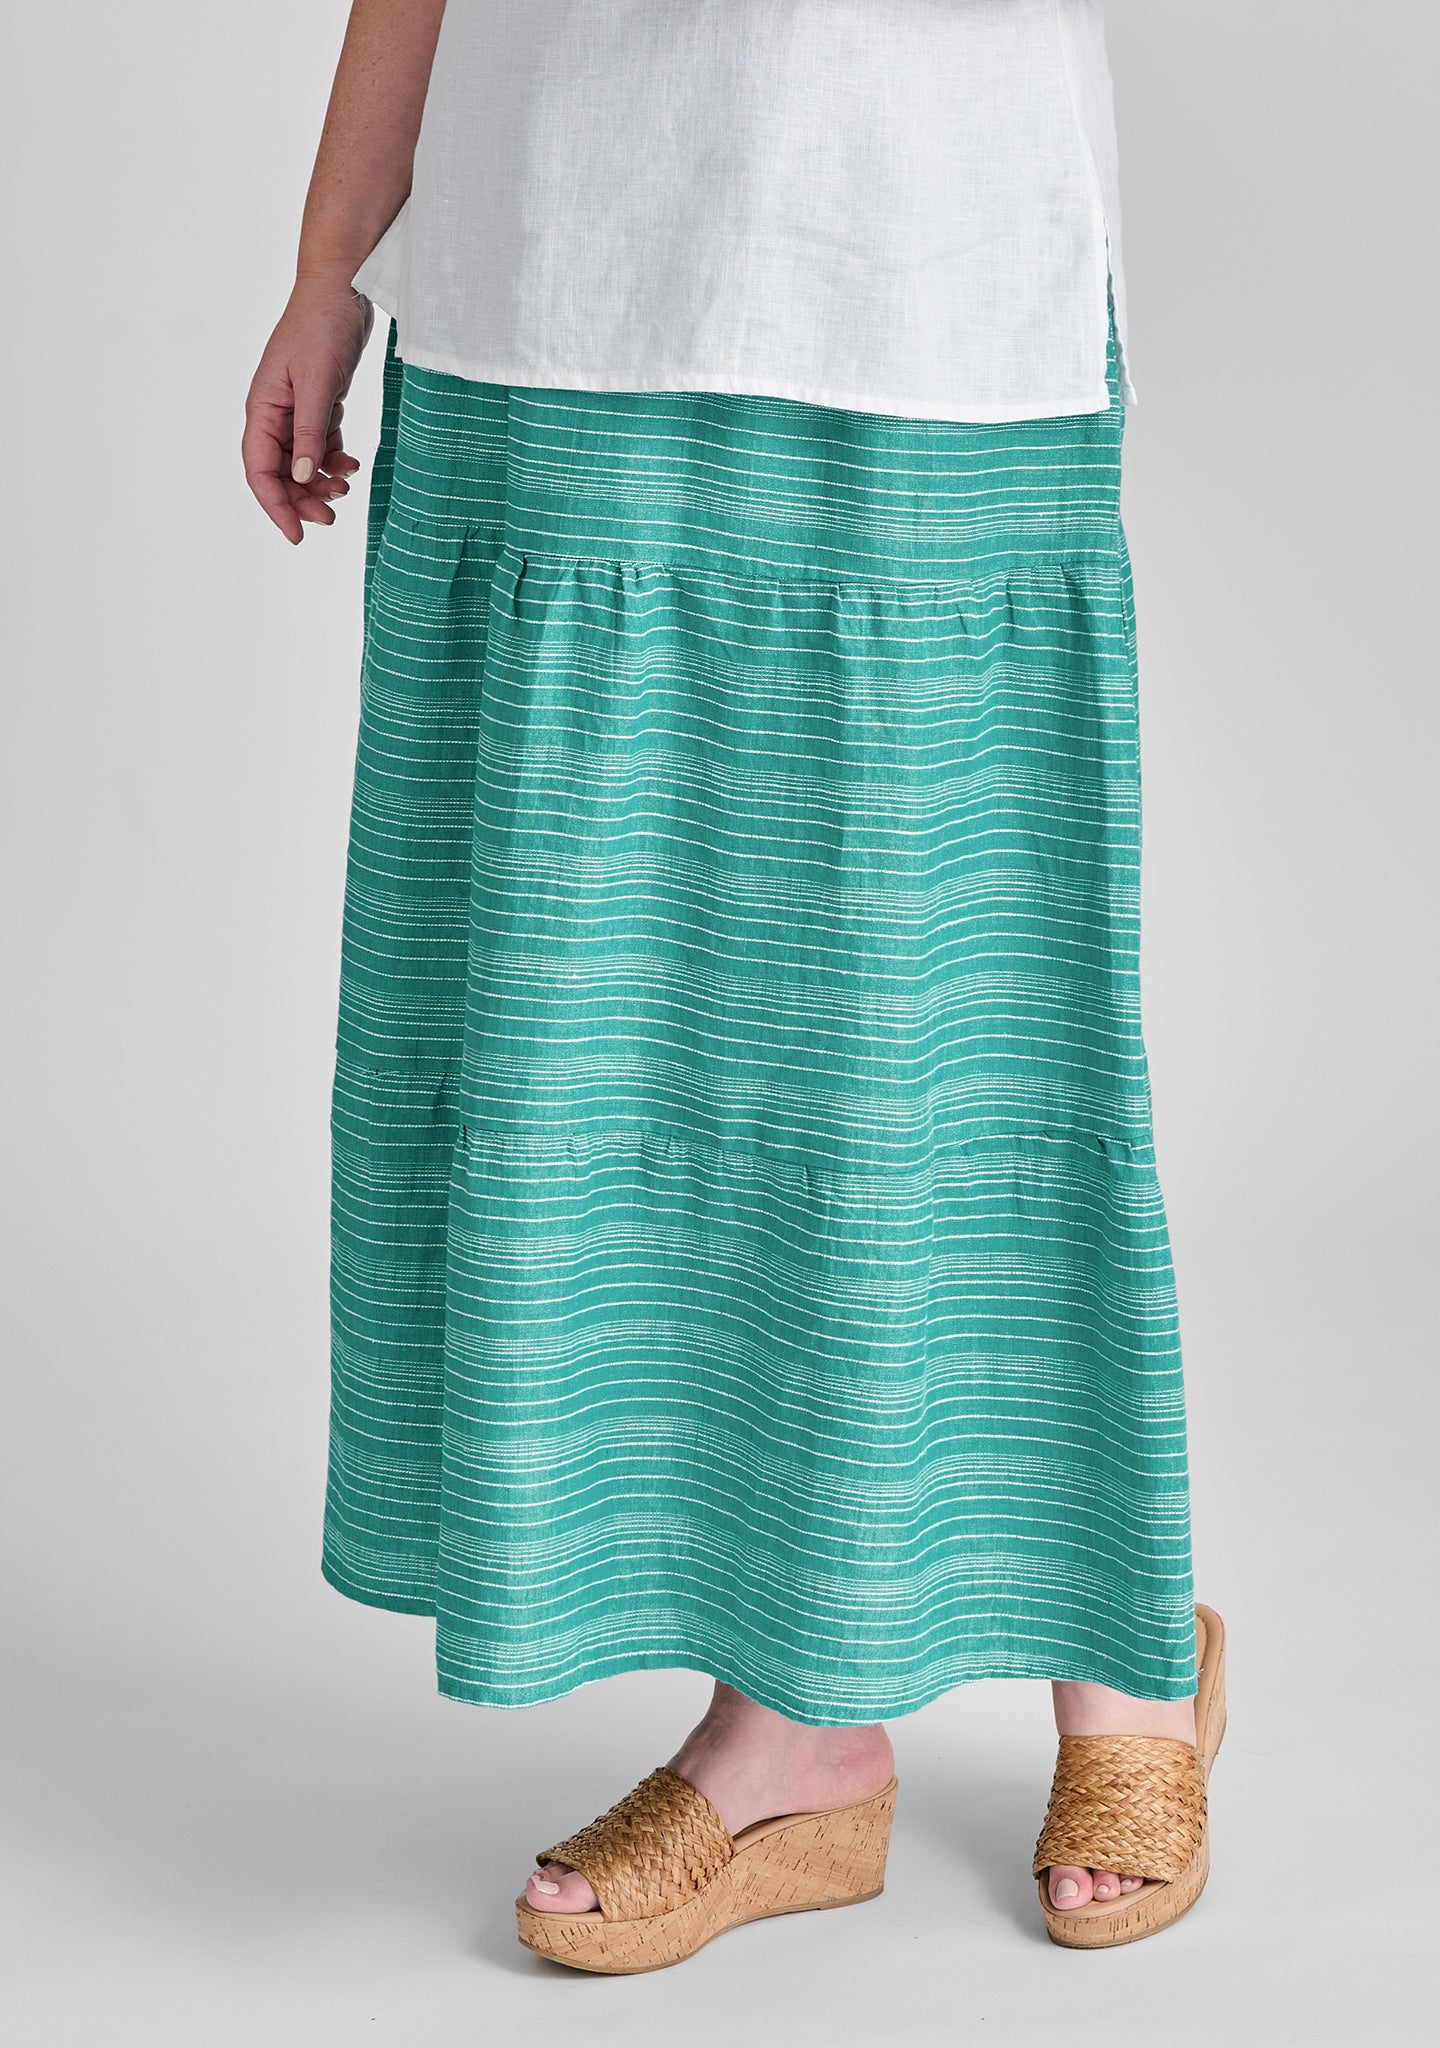 gaia skirt linen maxi skirt green